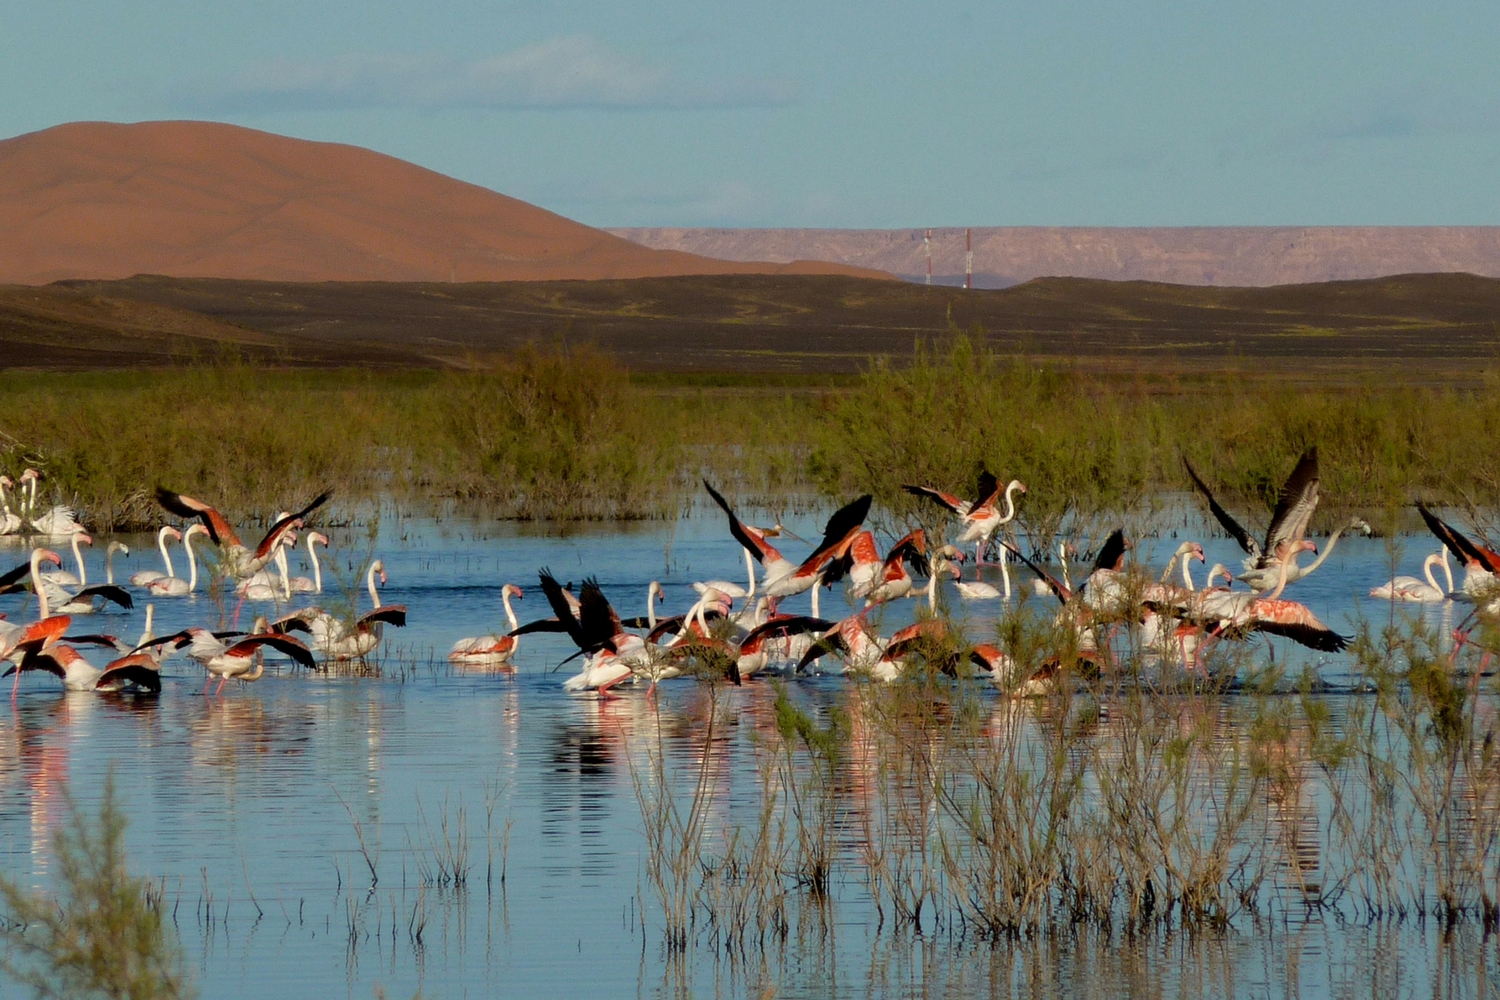 El Jadida (région) : Observation d’oiseaux à Oualidia